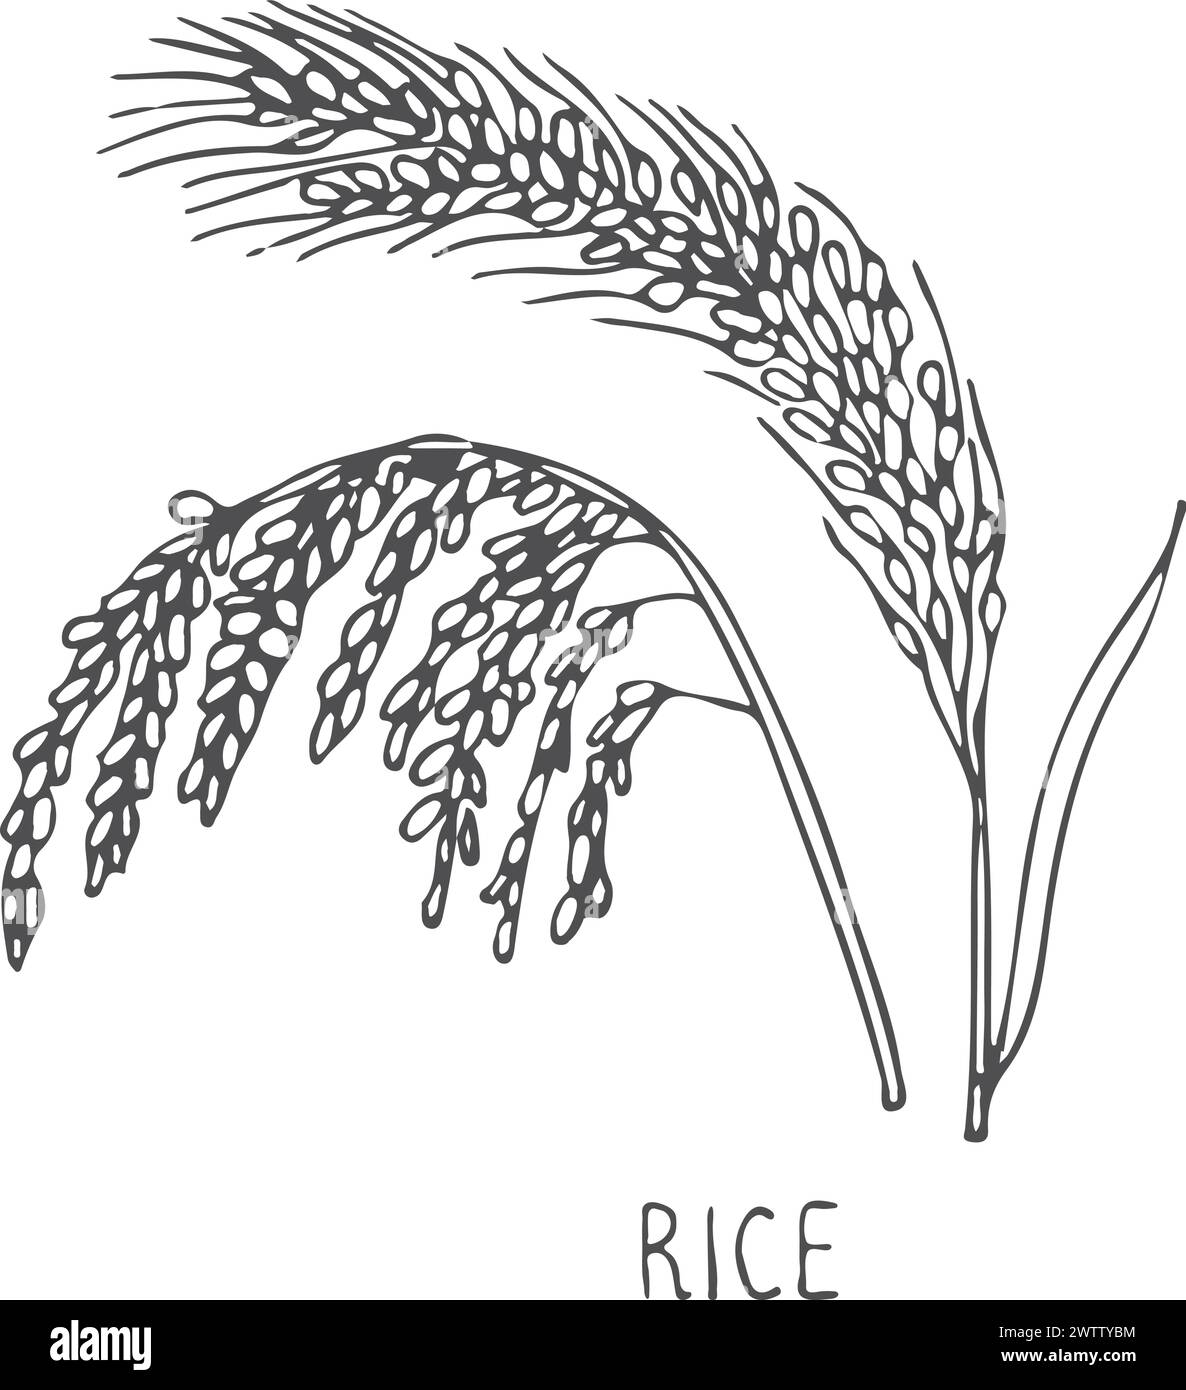 Rice plant farm crop cereal grain sketch Stock Vector